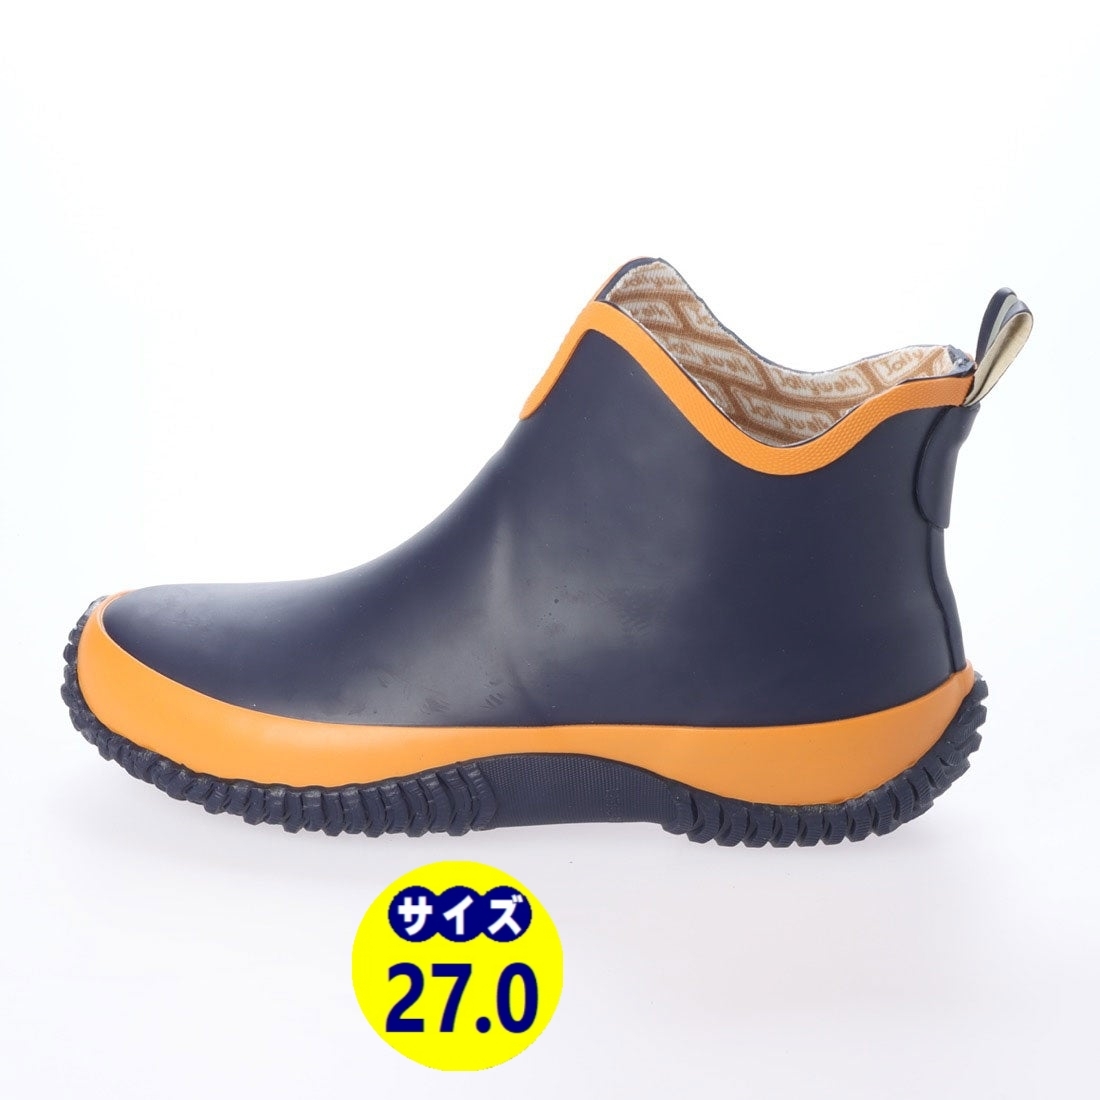 メンズレインブーツ レインシューズ 長靴 雨靴 天然ゴム素材 新品『20089-nav-270』27.0cm 在庫一掃セールの画像1